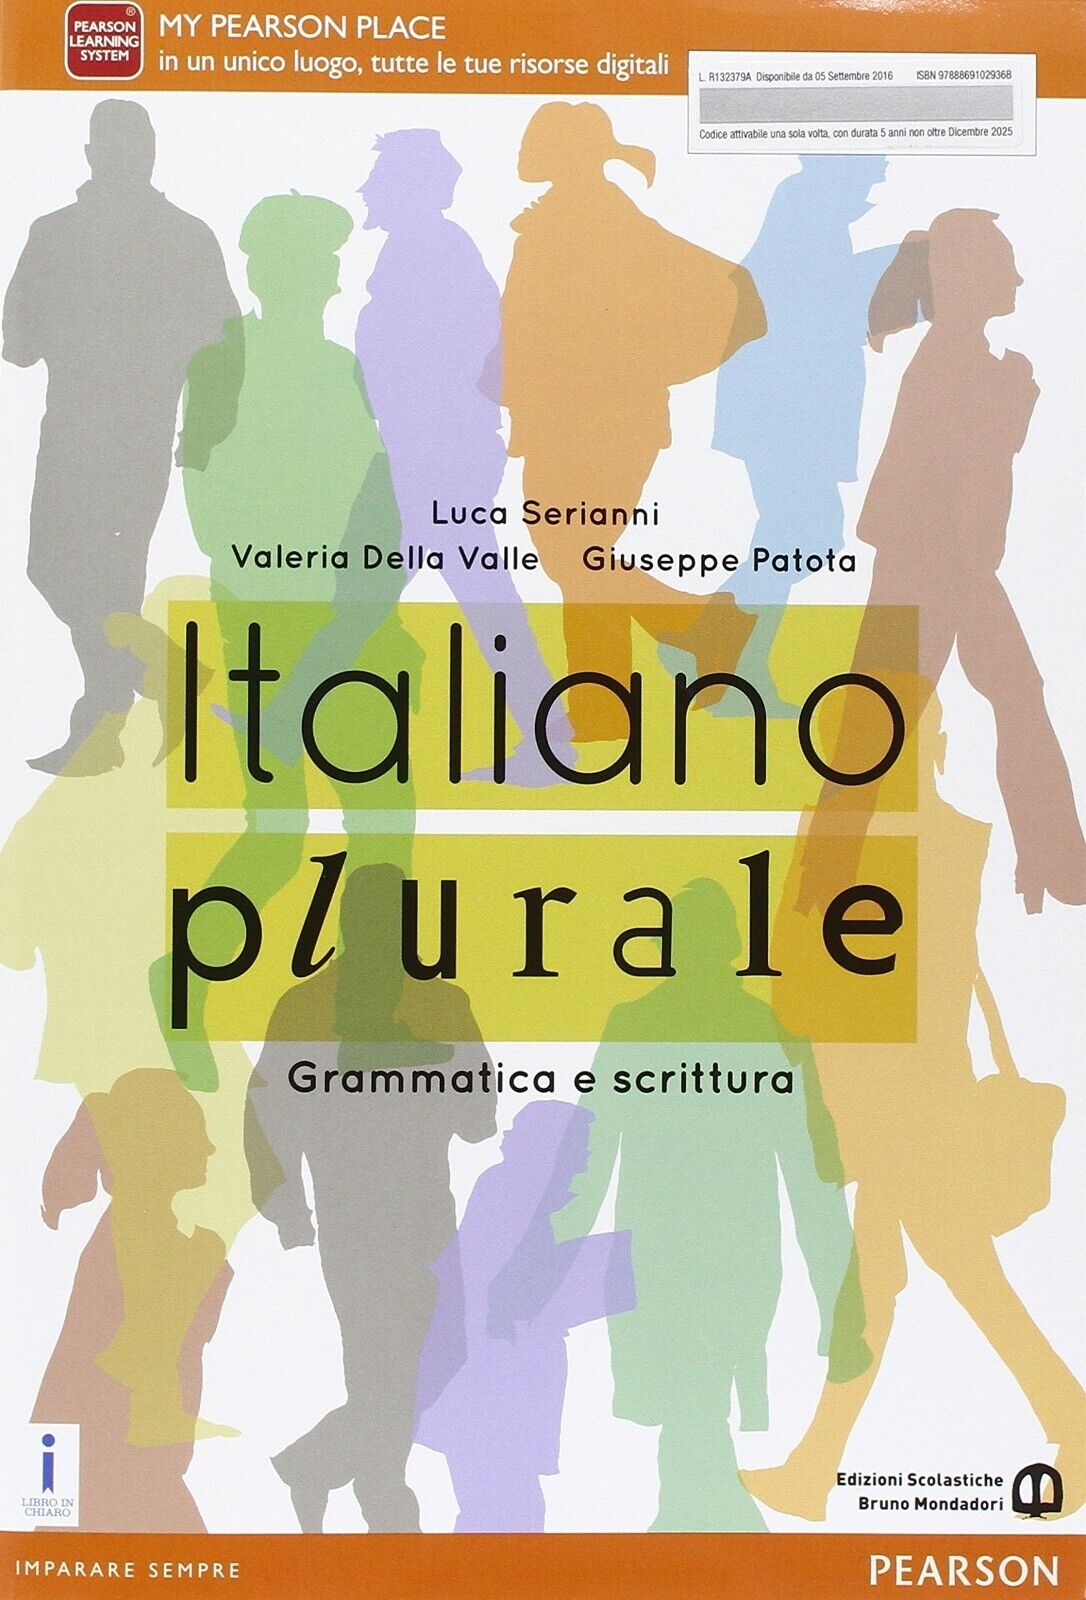 ITALIANO PLURALE GRAMMATICA E SCRITTURA di Luca Serianni, Valeria Della Valle, Giuseppe Patota